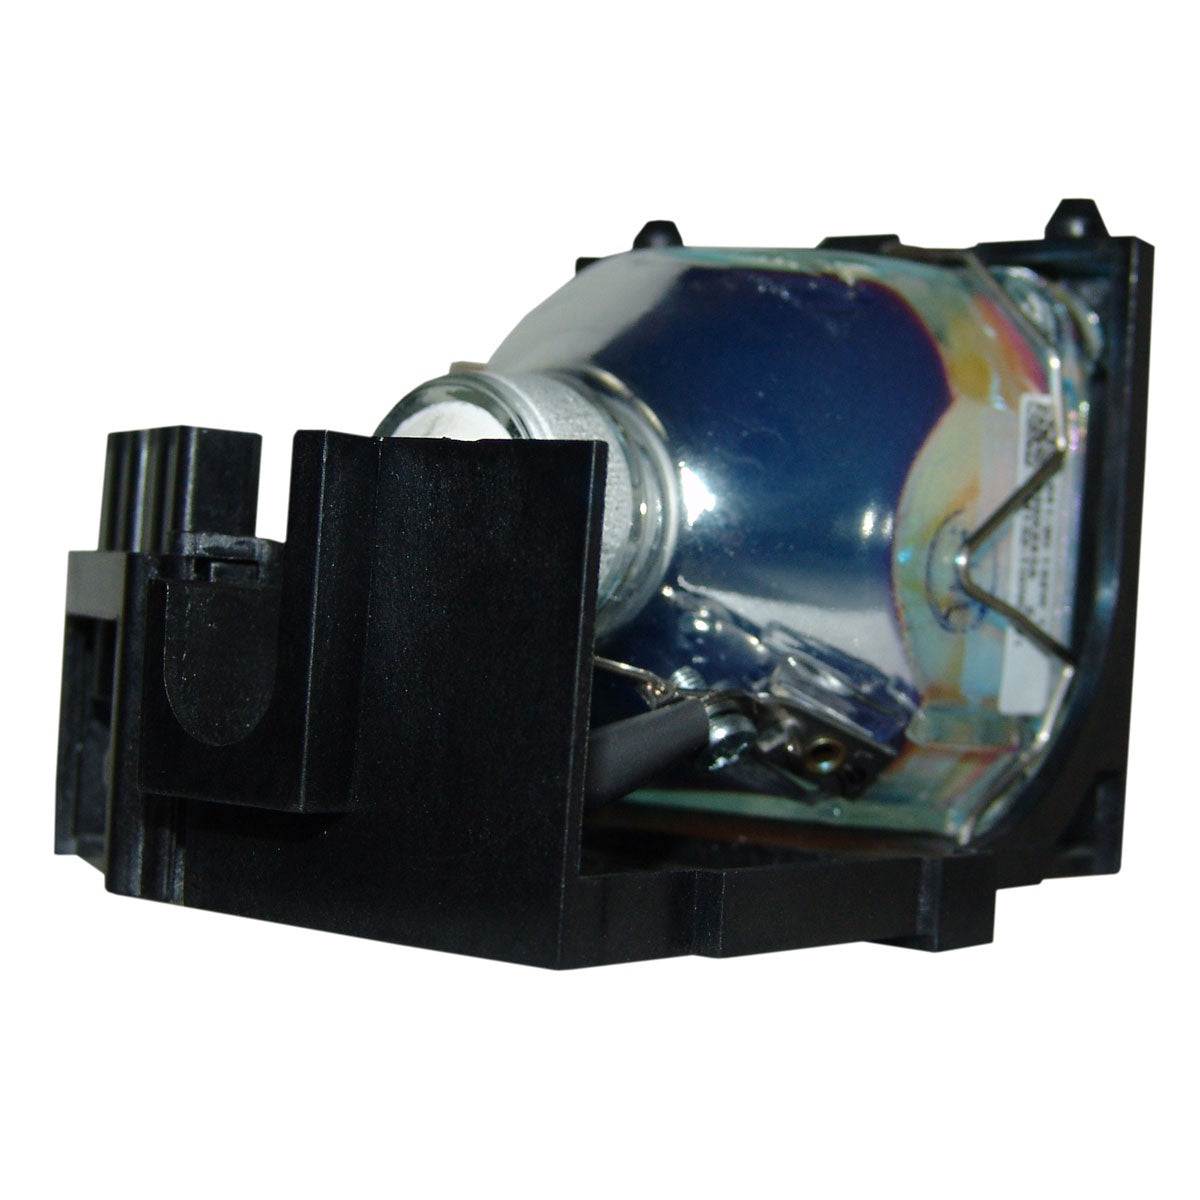 3M 78-6969-9463-7 Osram Projector Lamp Module